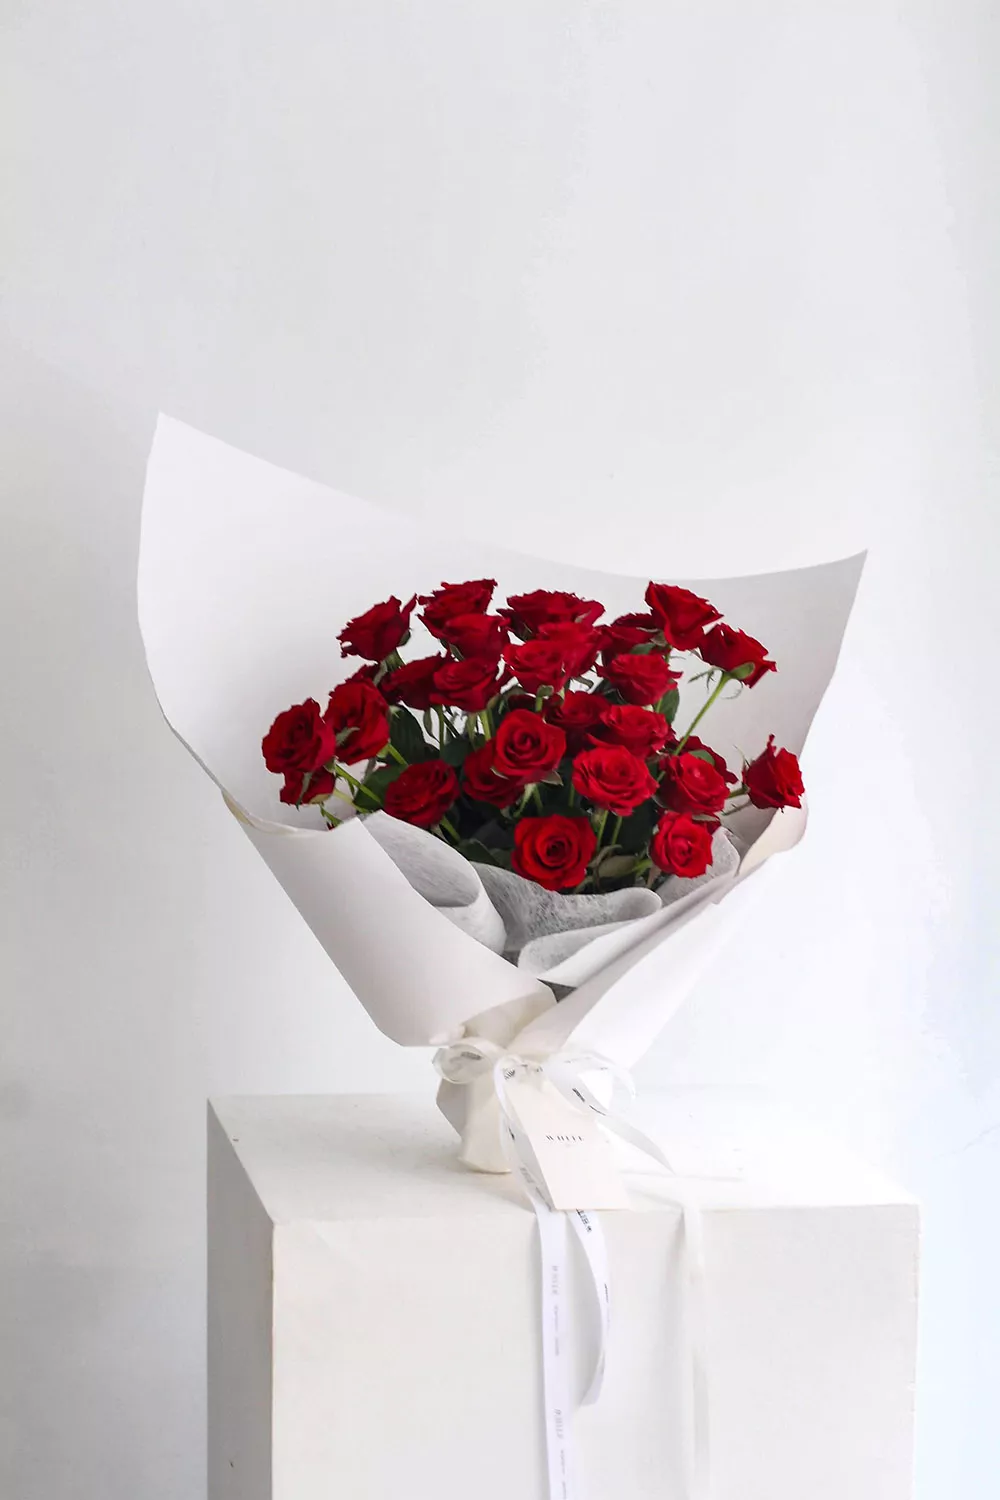 求婚花束價錢在NT$1,000～2,000元區間可以半客製花束。